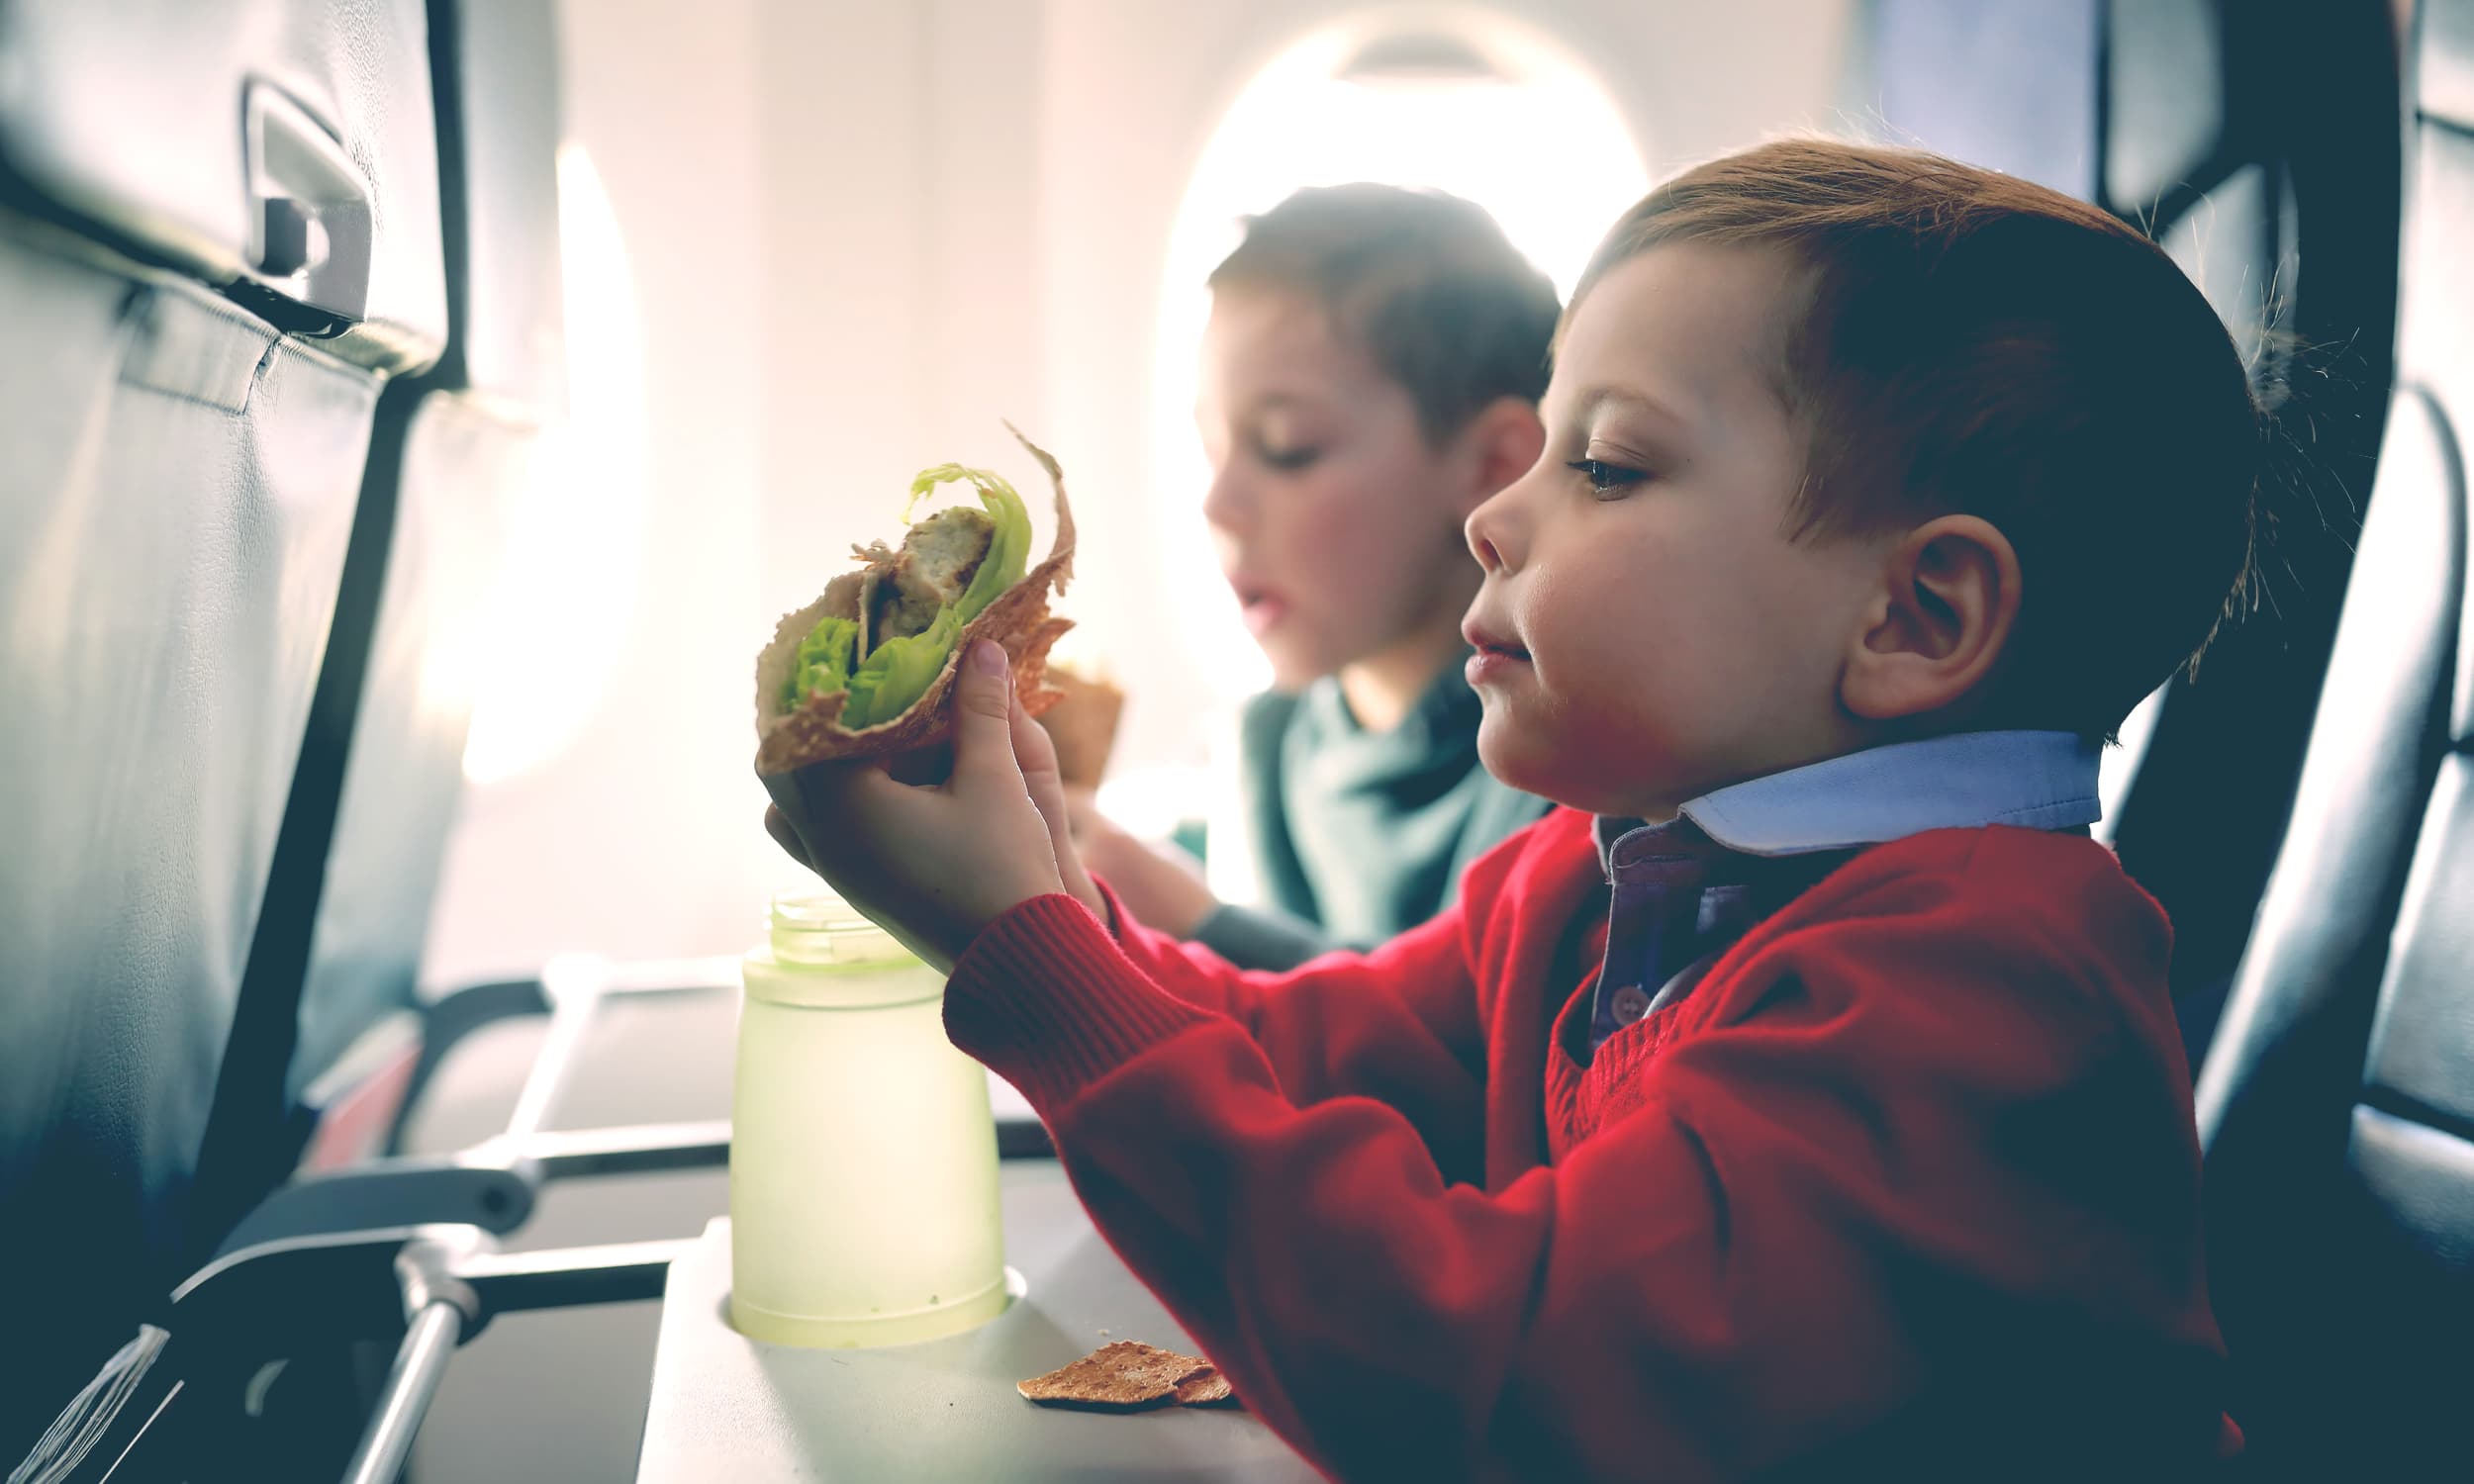 little kid eat in a plane